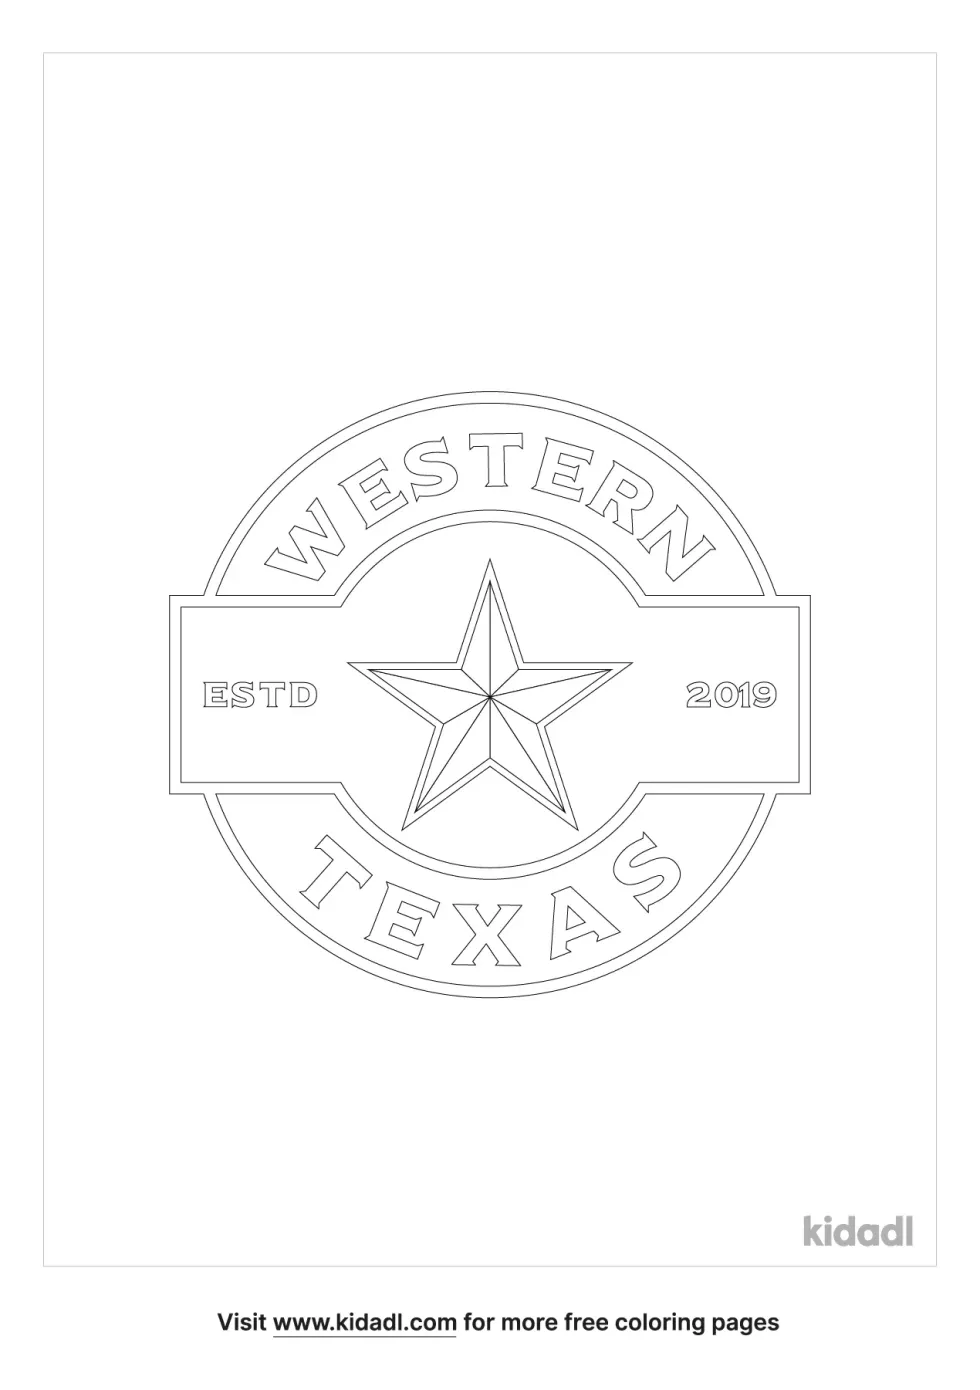 Texas Seal